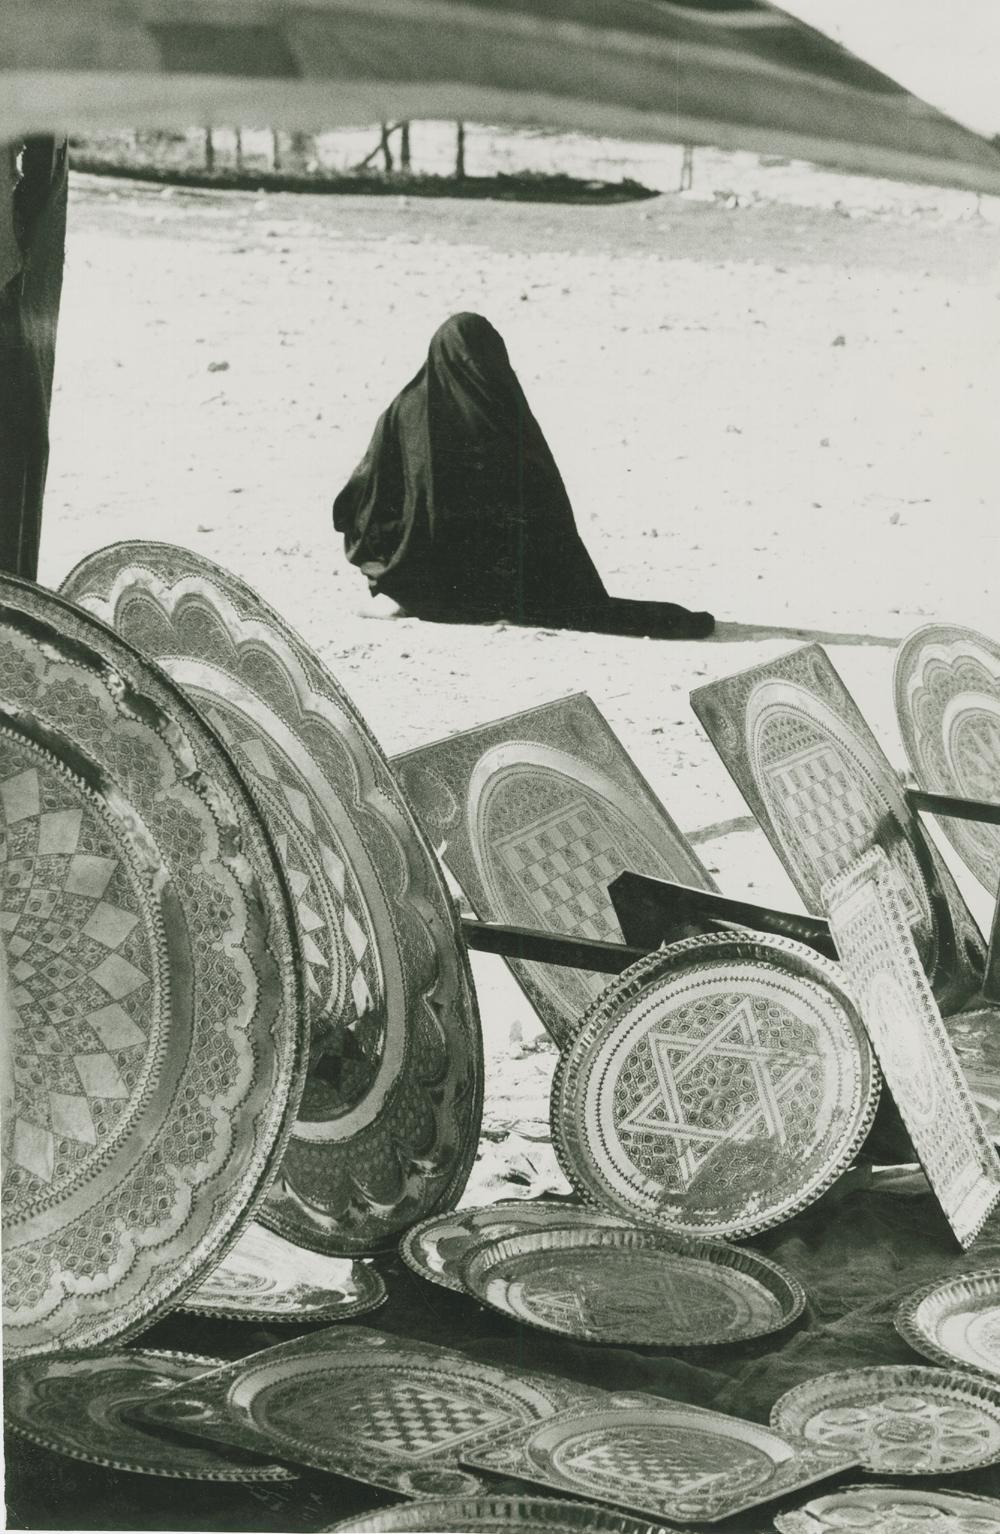 Бедуинская женщина, торгующая изделиями из меди. Фотограф Леонард Фрид